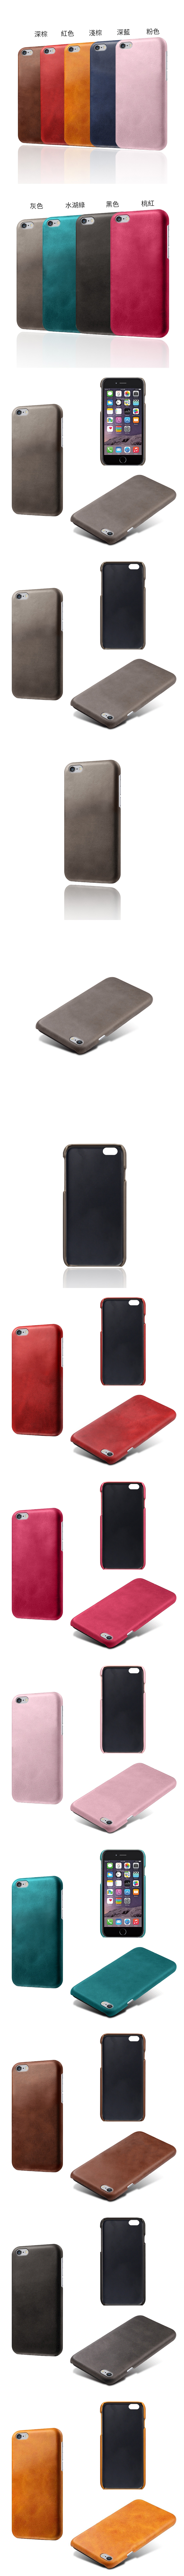 IPhone6 IPhone6s 4.7 i6s 皮革保護殼(PLAIN) - 牛皮仿真皮紋單色背蓋素色多色手機殼保護套手機套